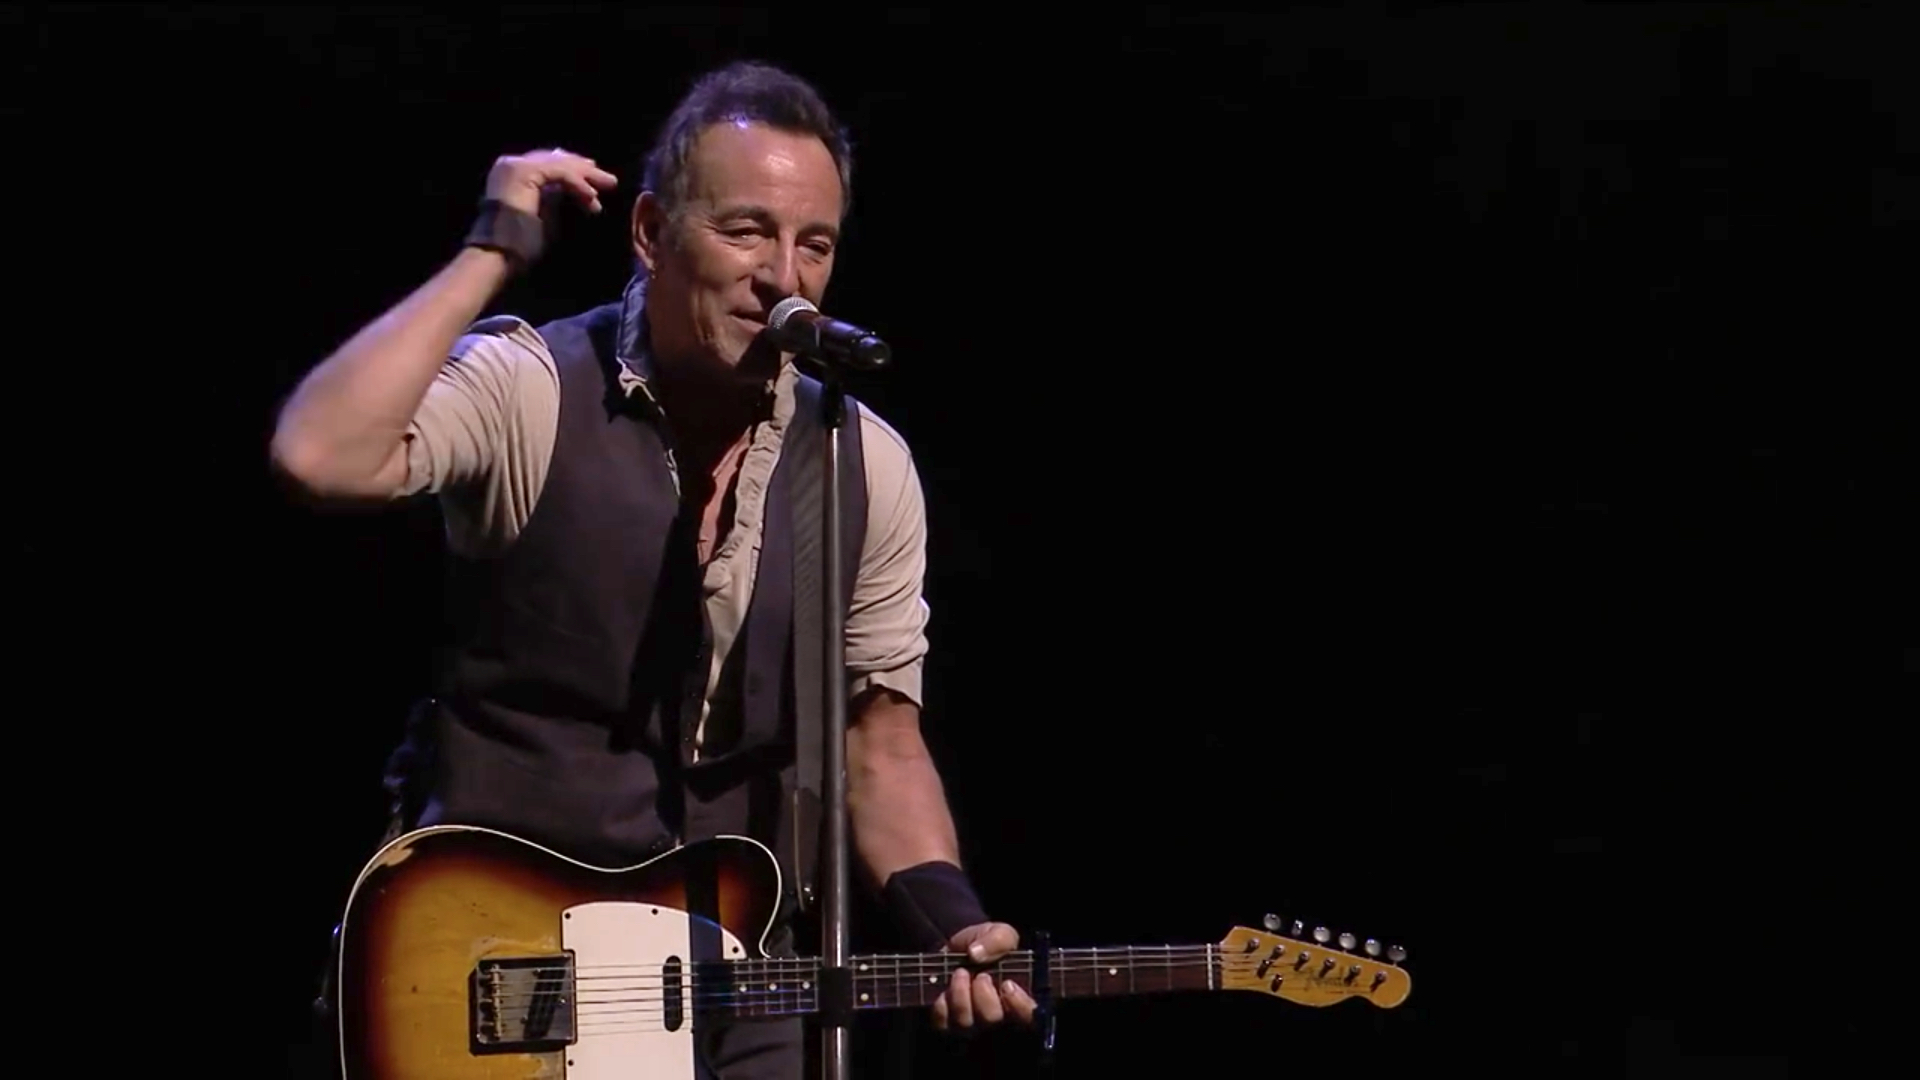 Bruce Springsteen y Bryan Adams tocaron juntos en los Invictus Games. cusica plus.